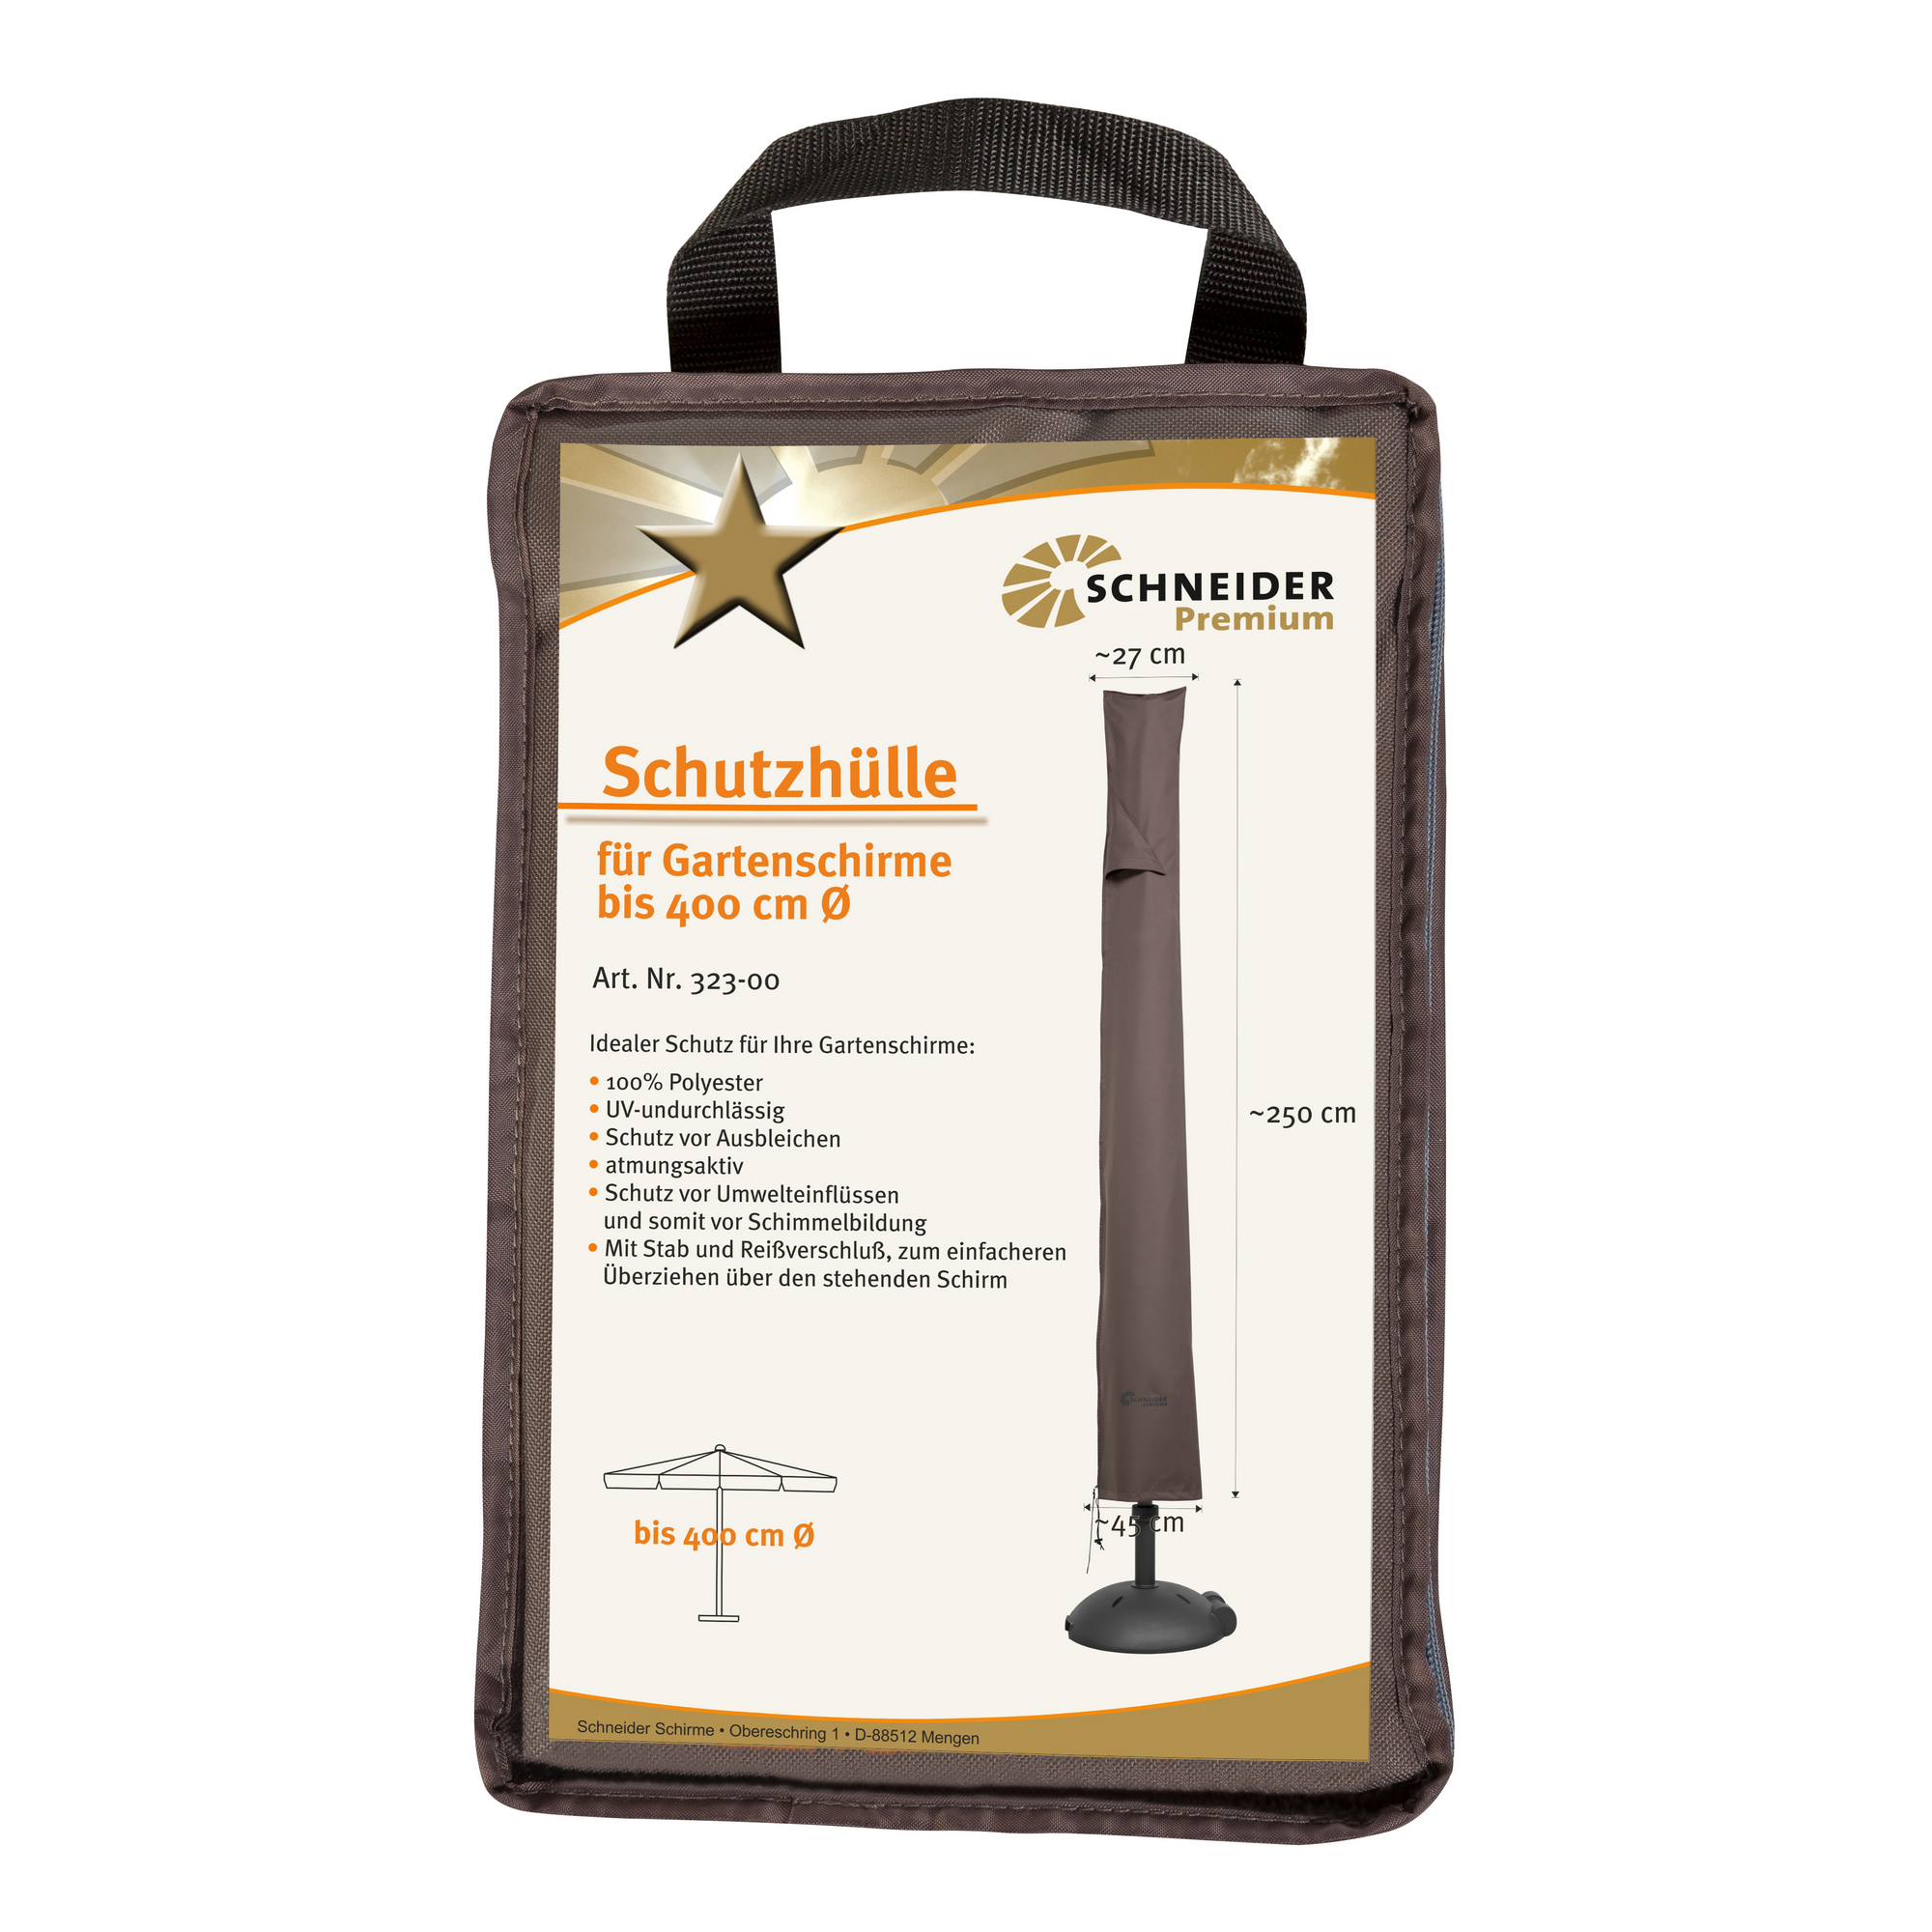 Premium-Schutzhülle für Schirme bis Ø 400 cm und 300 x 300 cm + product picture